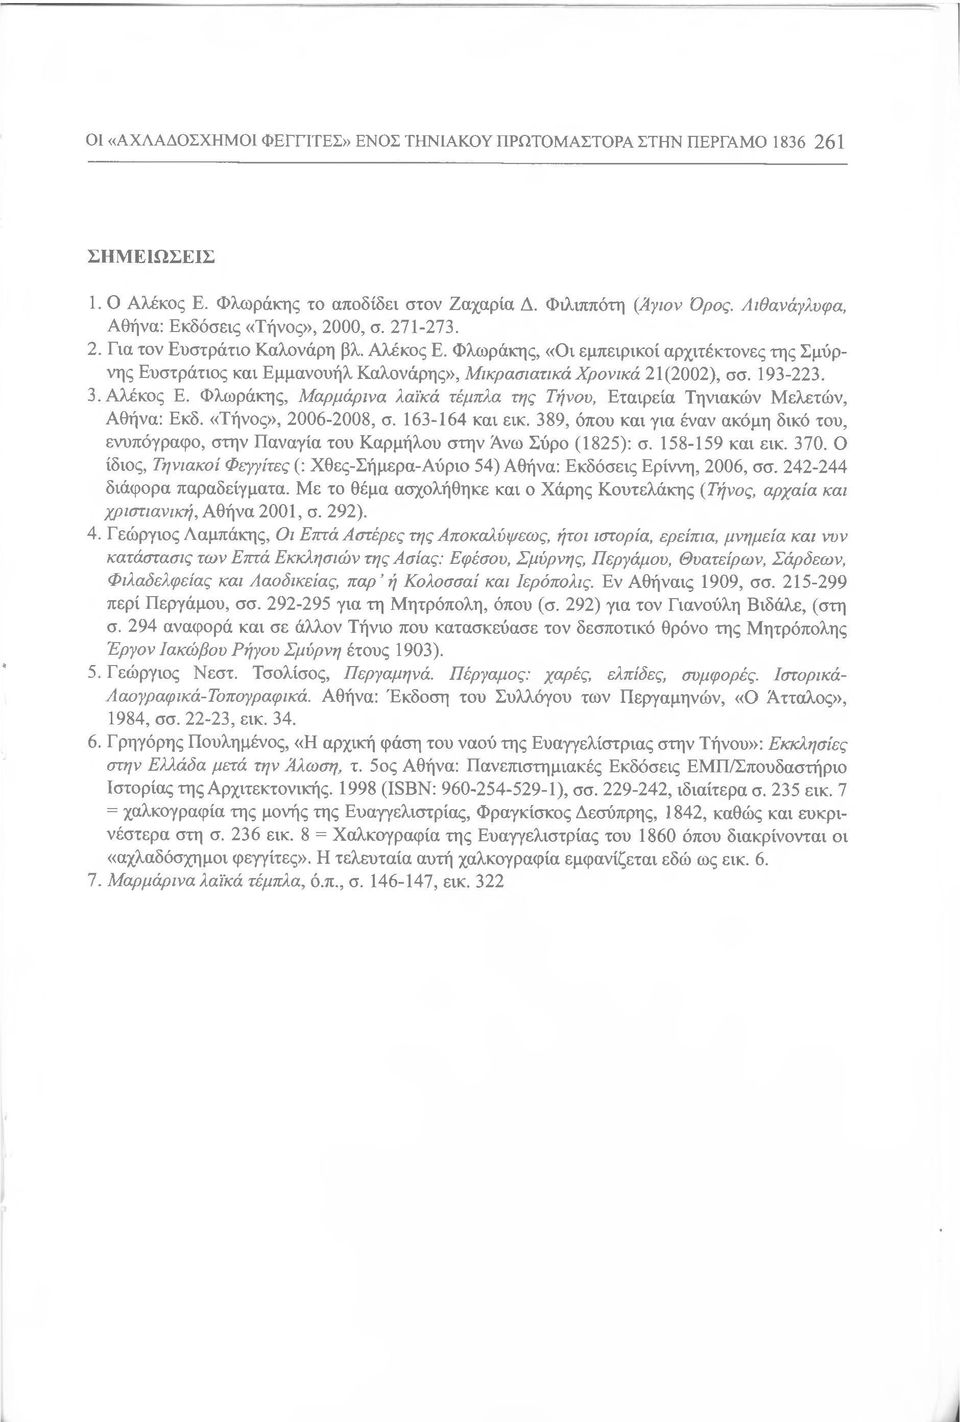 Φλωράκης, «Οι εμπειρικοί αρχιτέκτονες της Σμύρνης Ευστράτιος και Εμμανουήλ Καλονάρης», Μικρασιατικά Χρονικά 21 (2002), σσ. 193-223. 3. Αλέκος Ε.